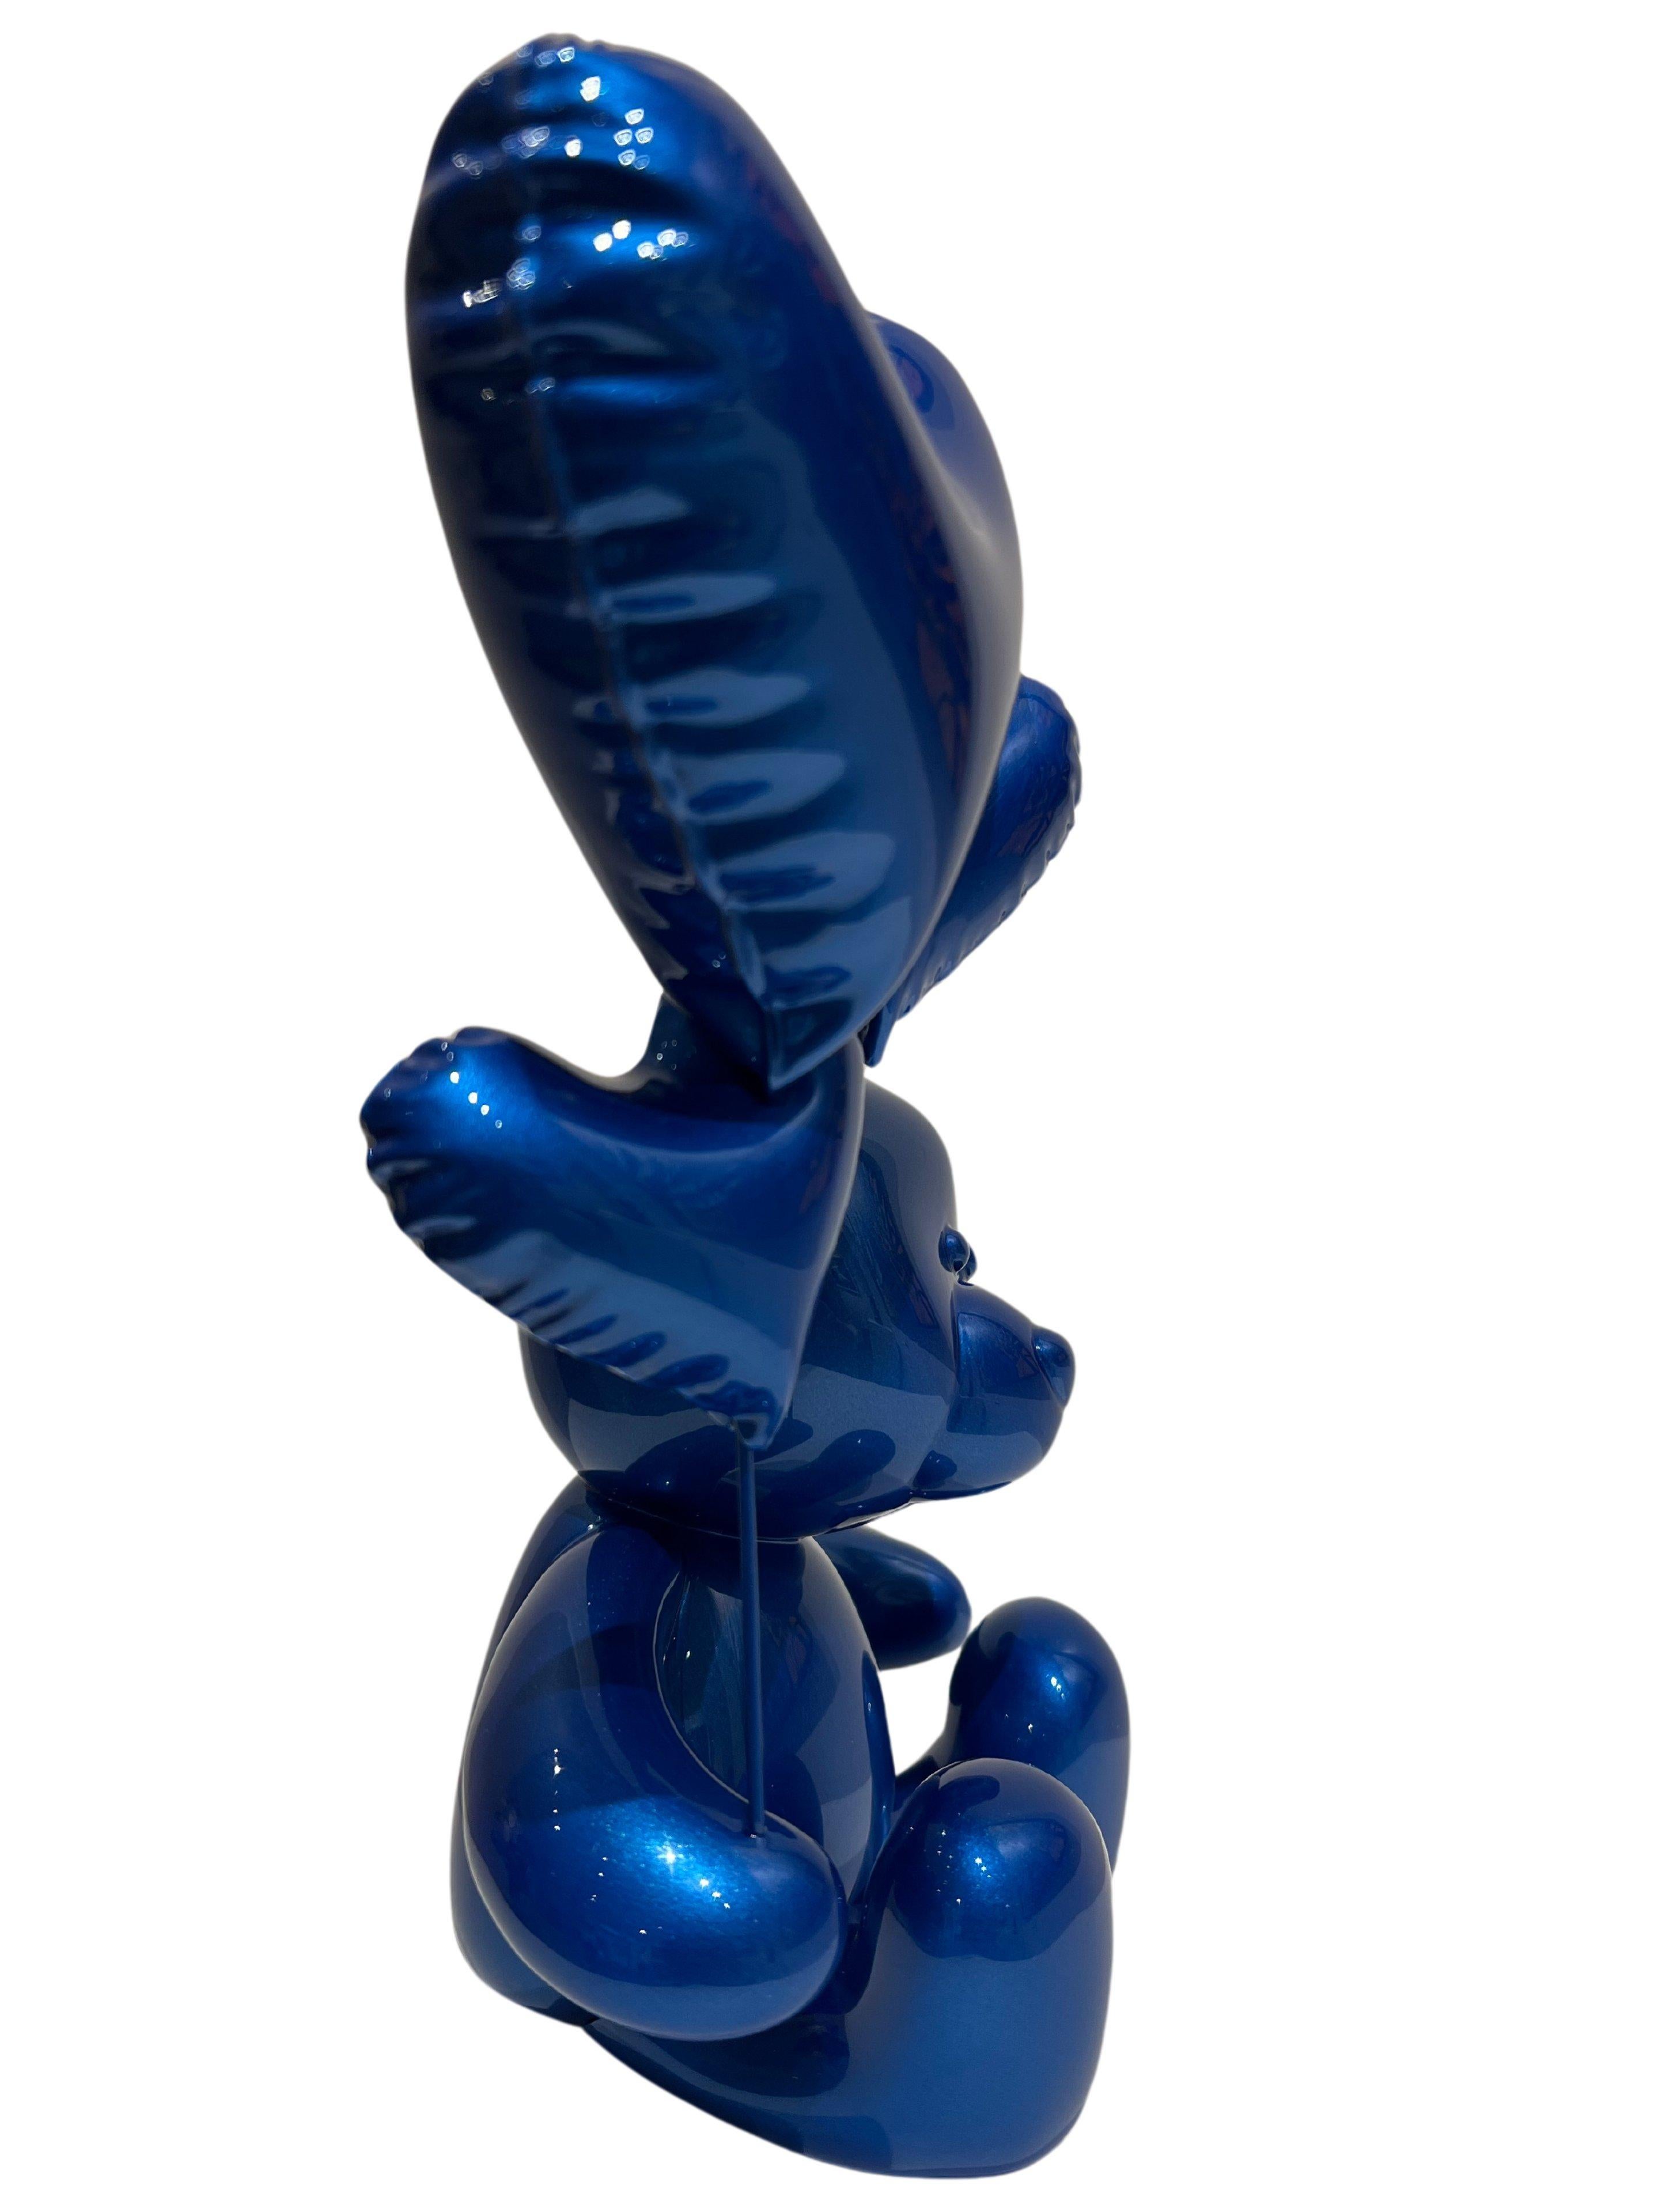 Teddy Love - Bleu Côte d'Azur - Pop Art Sculpture by Nicolas Krauss